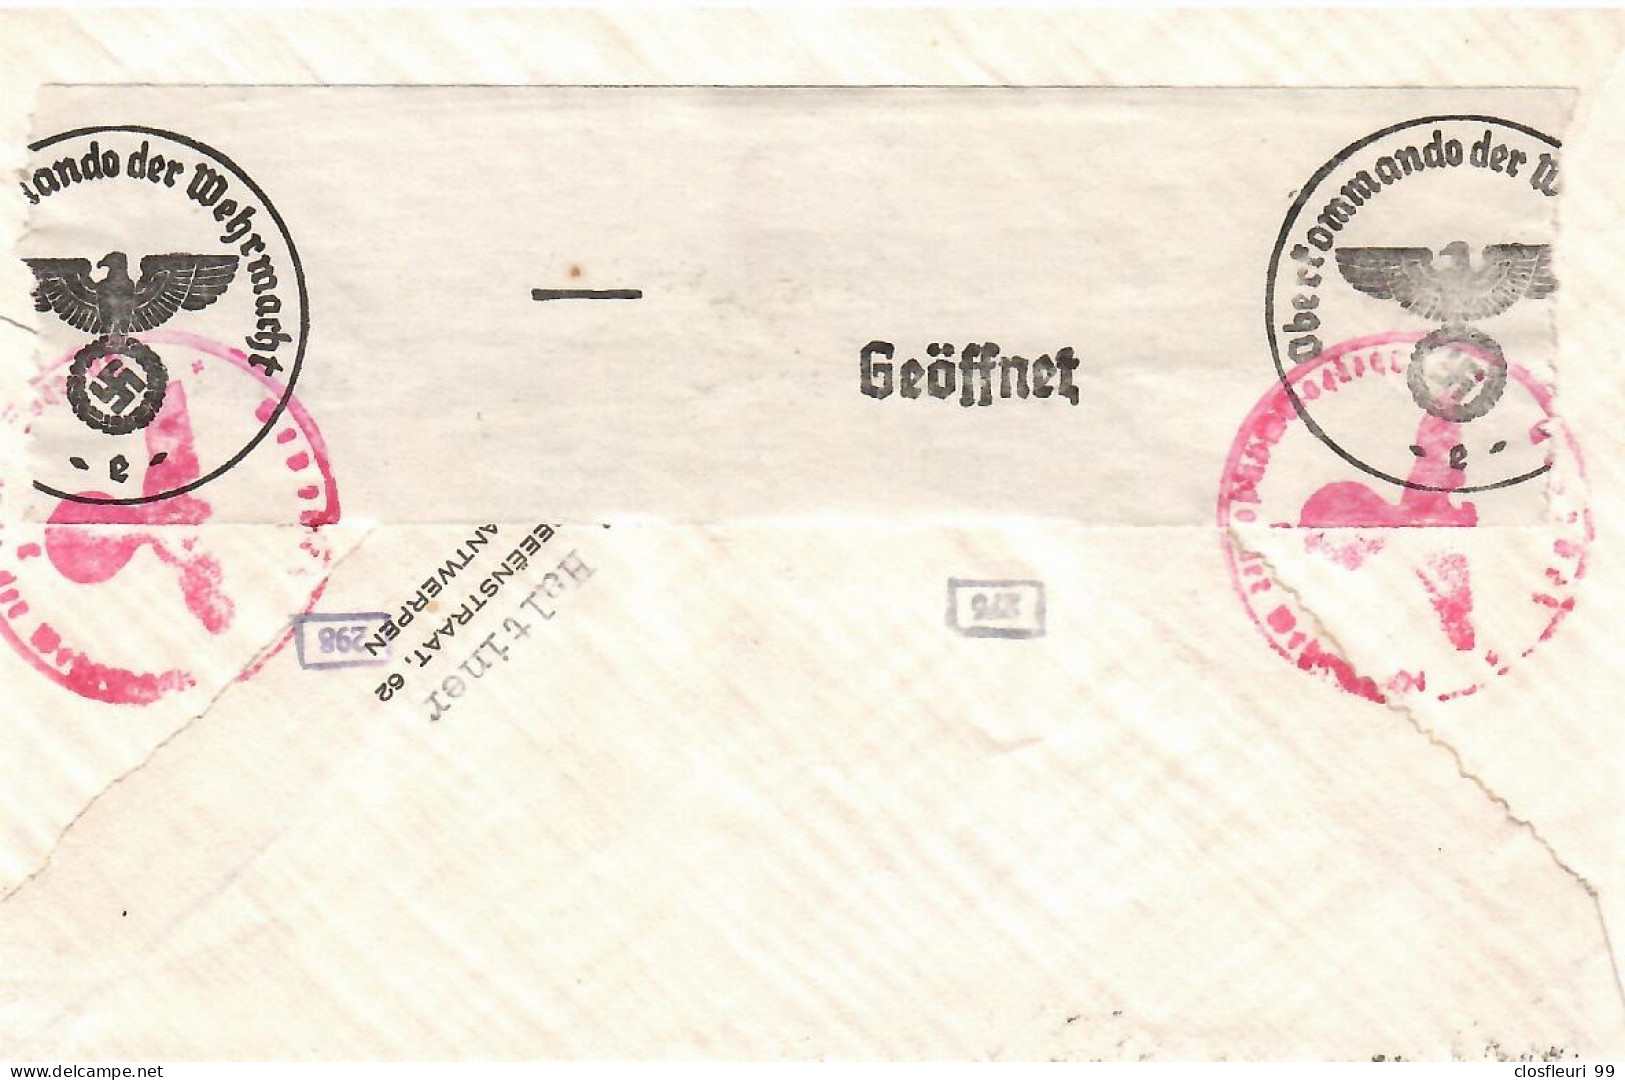 Lettre Censurée 20.12.1941, Avec Série, Geöffnet 298, 275, Pour Zürich - Guerre 40-45 (Lettres & Documents)